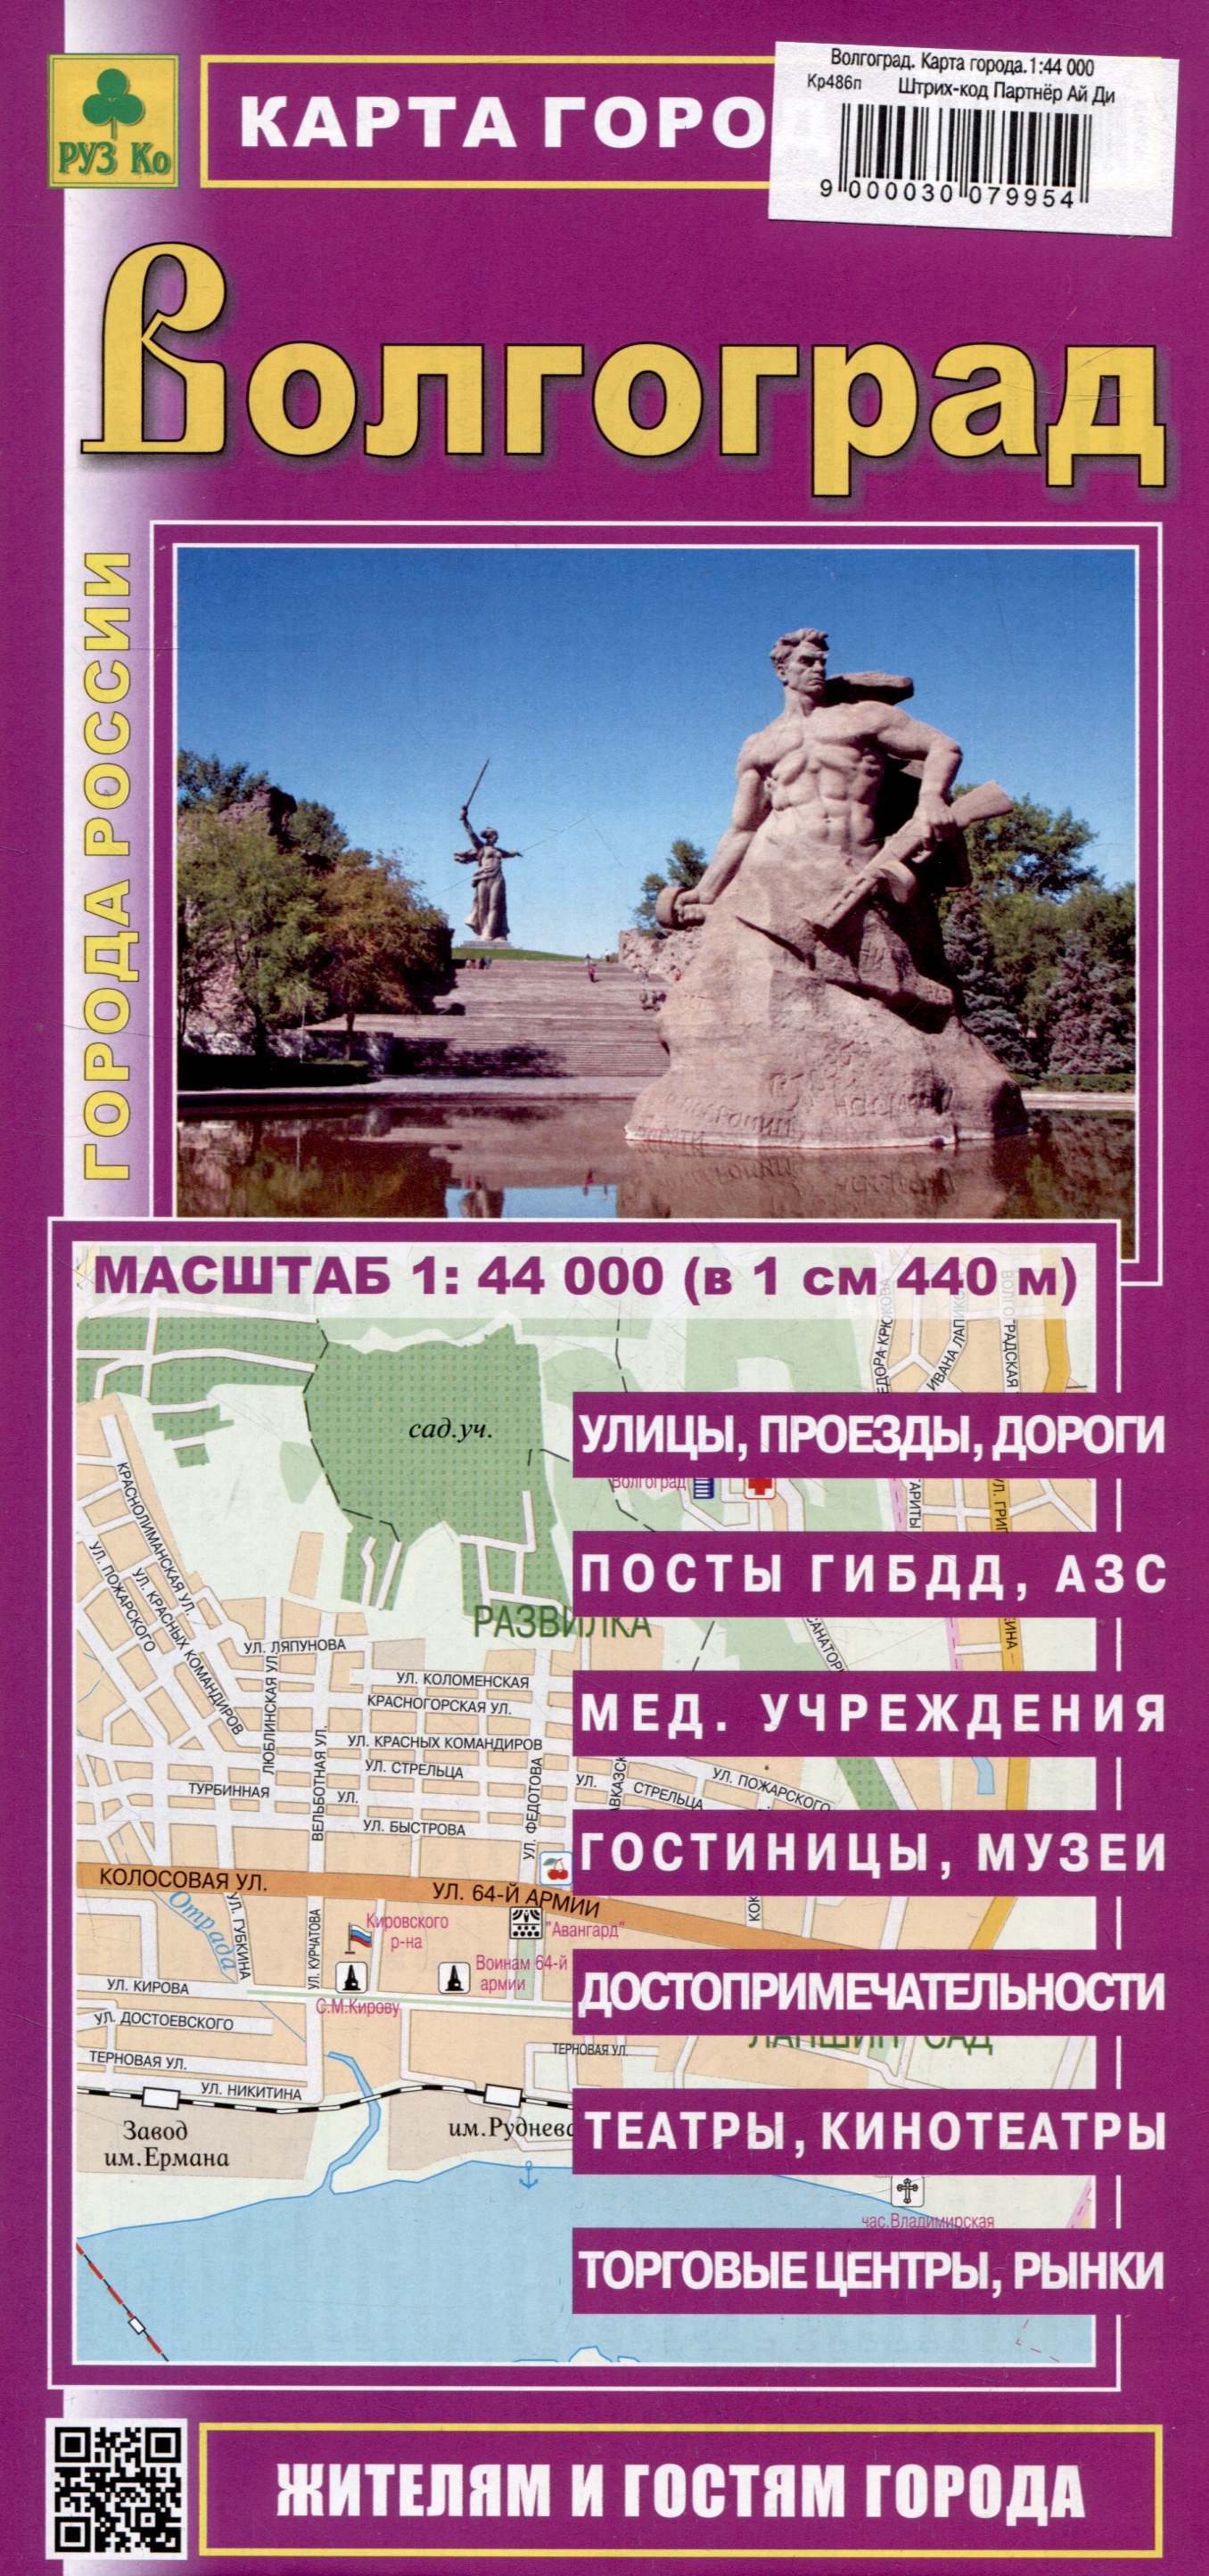 Волгоград. Карта города (М1:44 000) волгоград карта города м1 44 000